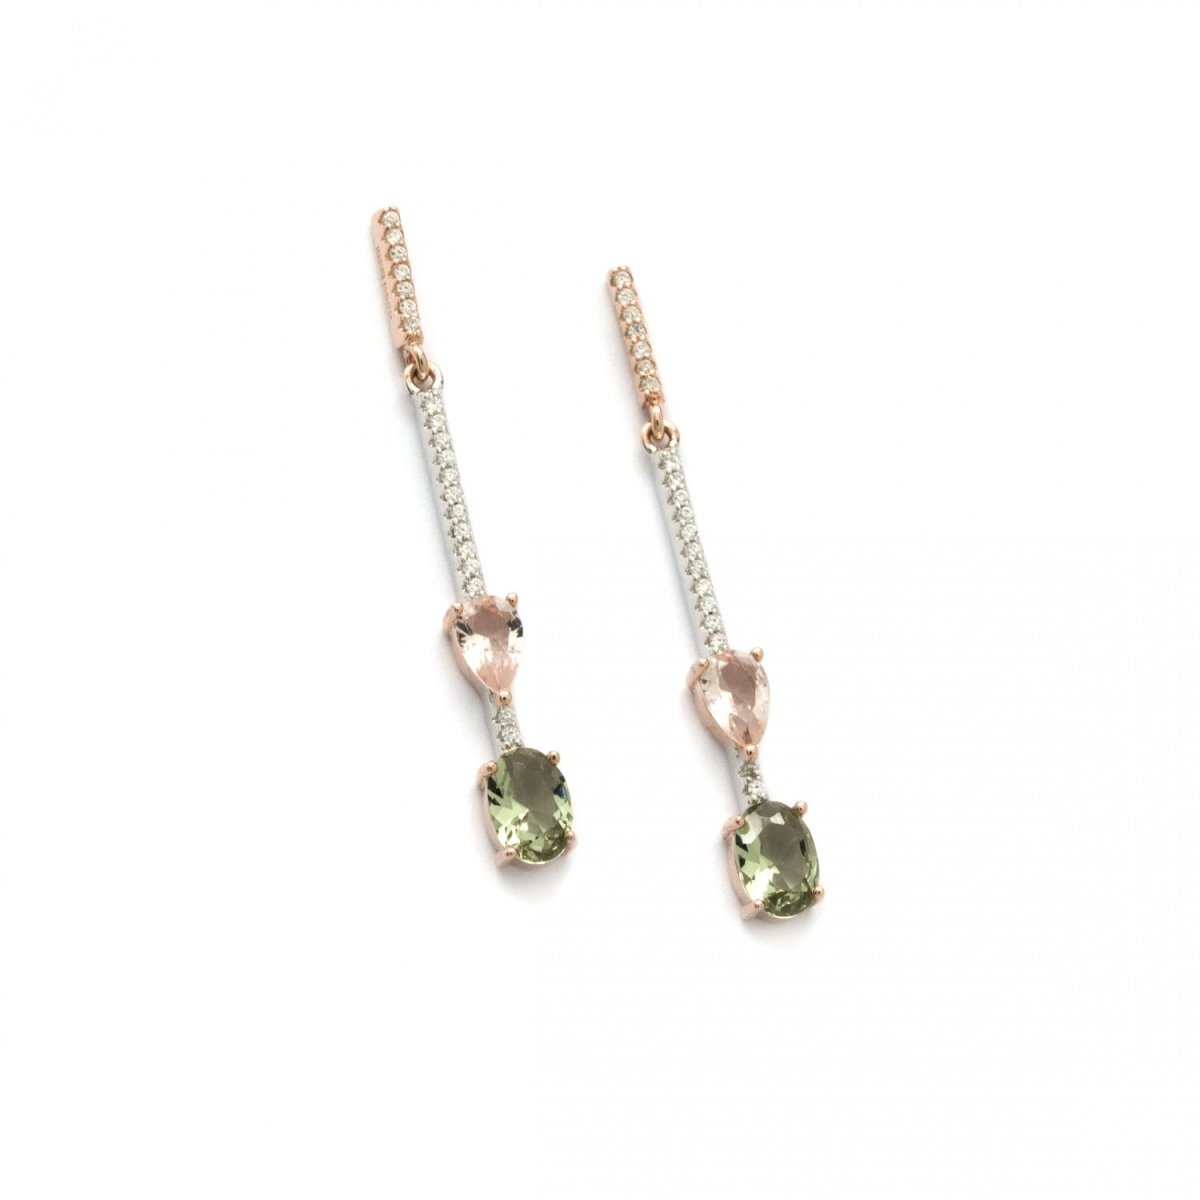 Earrings - Long fine silver earrings in pink mobile design